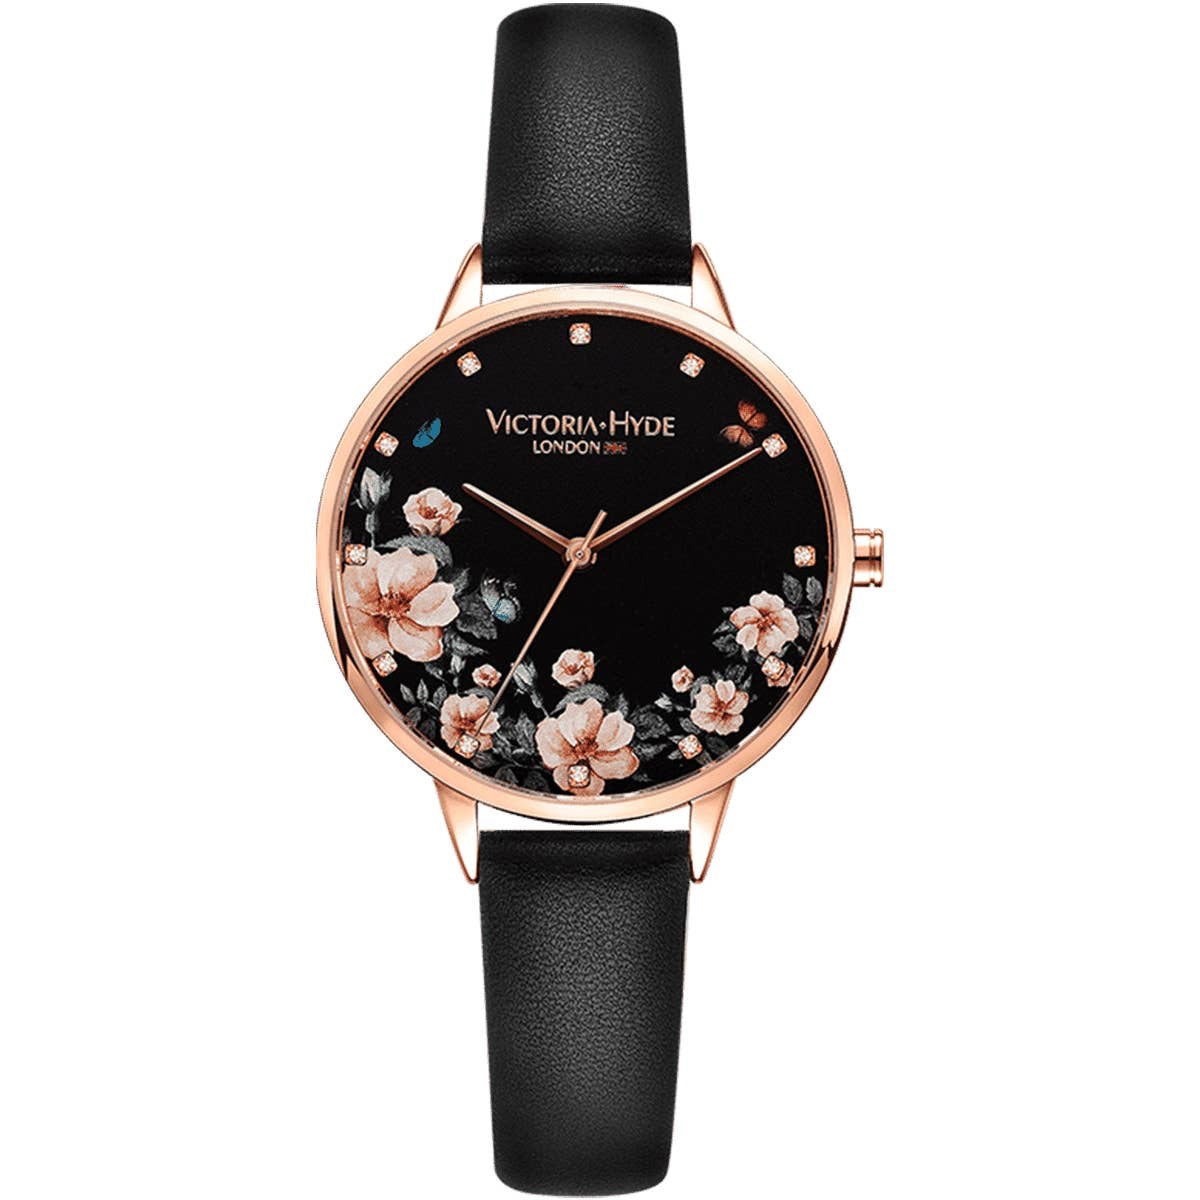 Reloj Victoria Hype London negro y oro rosa con flores para mujer